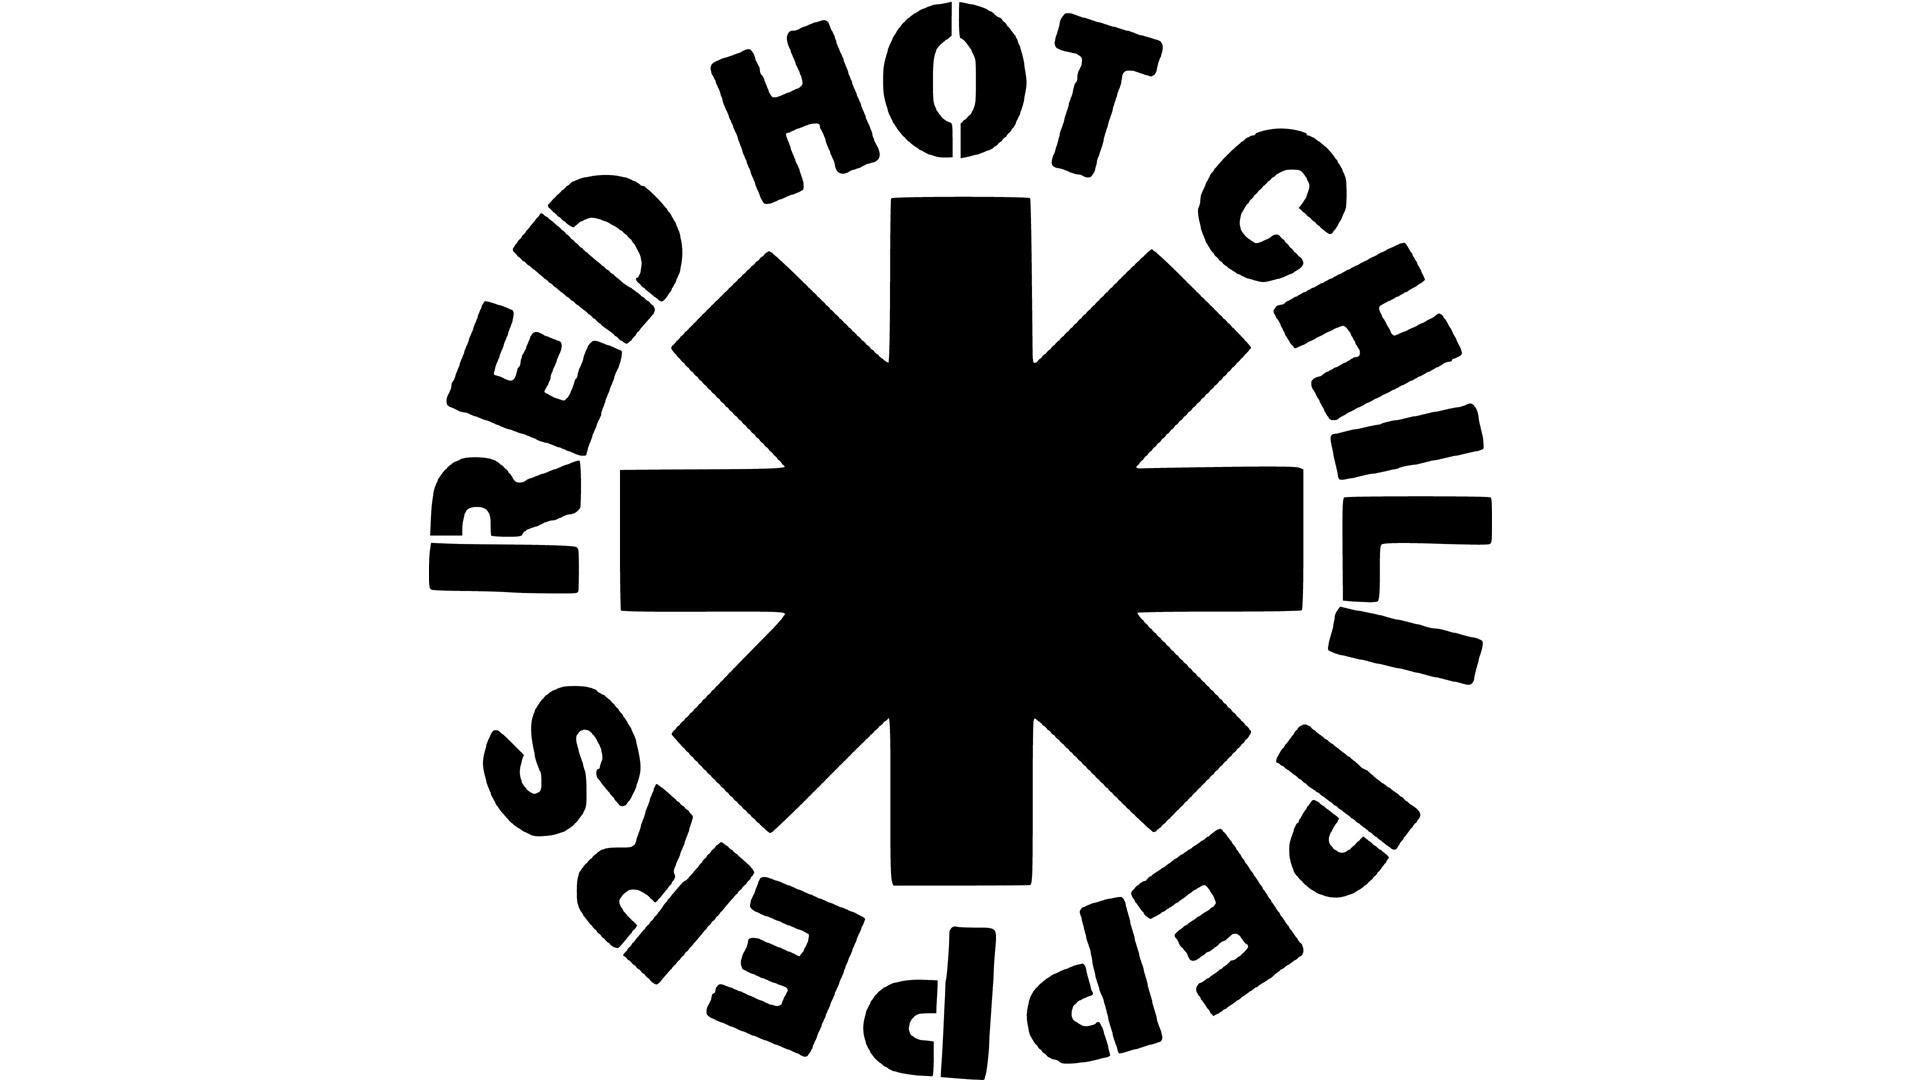 Red Hot Chili Peppers HD desktop wallpaper, Widescreen, High